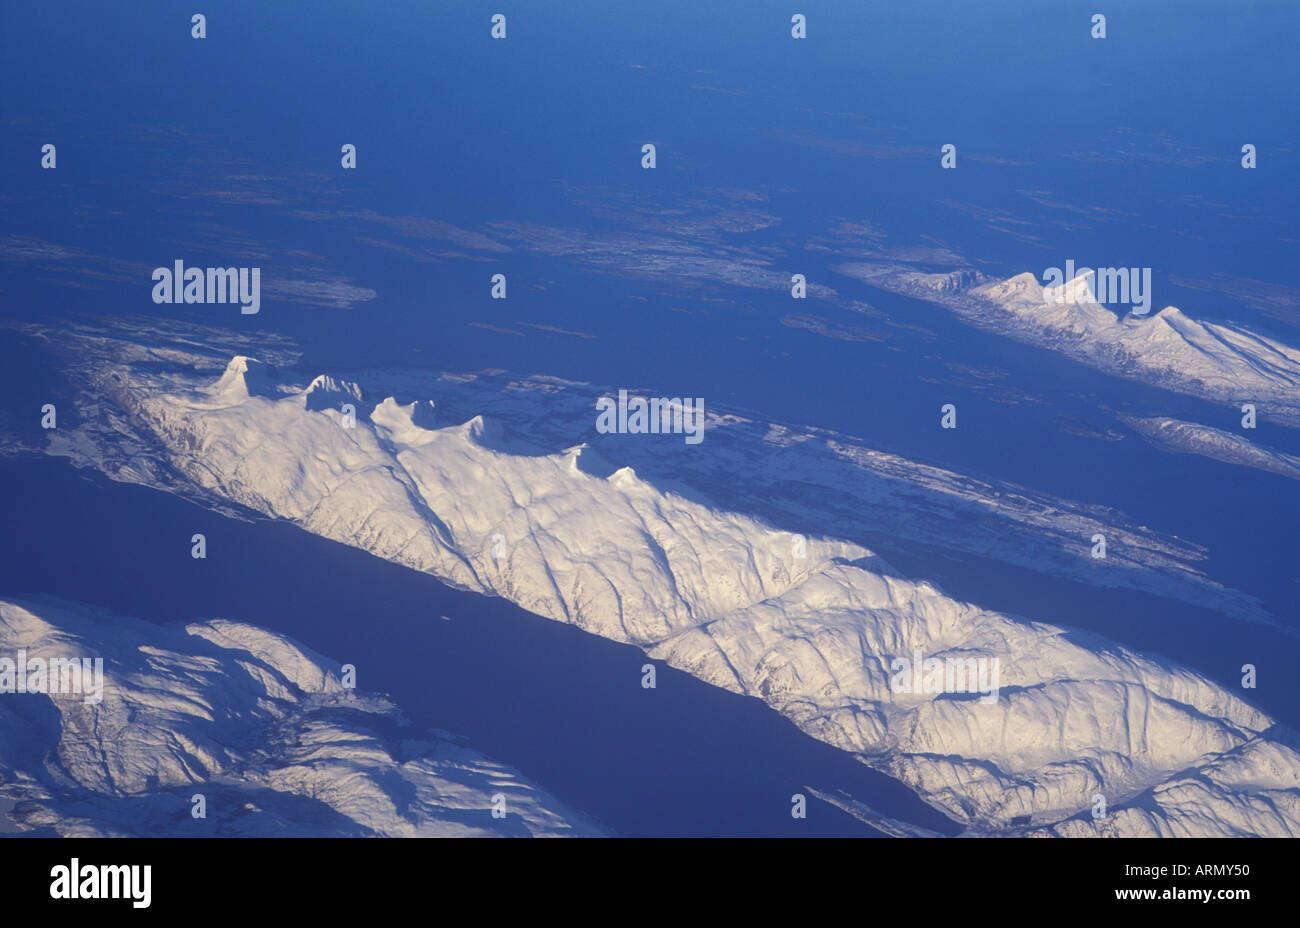 Près de sept soeurs massif Sandnessjoeen, vue aérienne, de la Norvège, Nordland. Banque D'Images